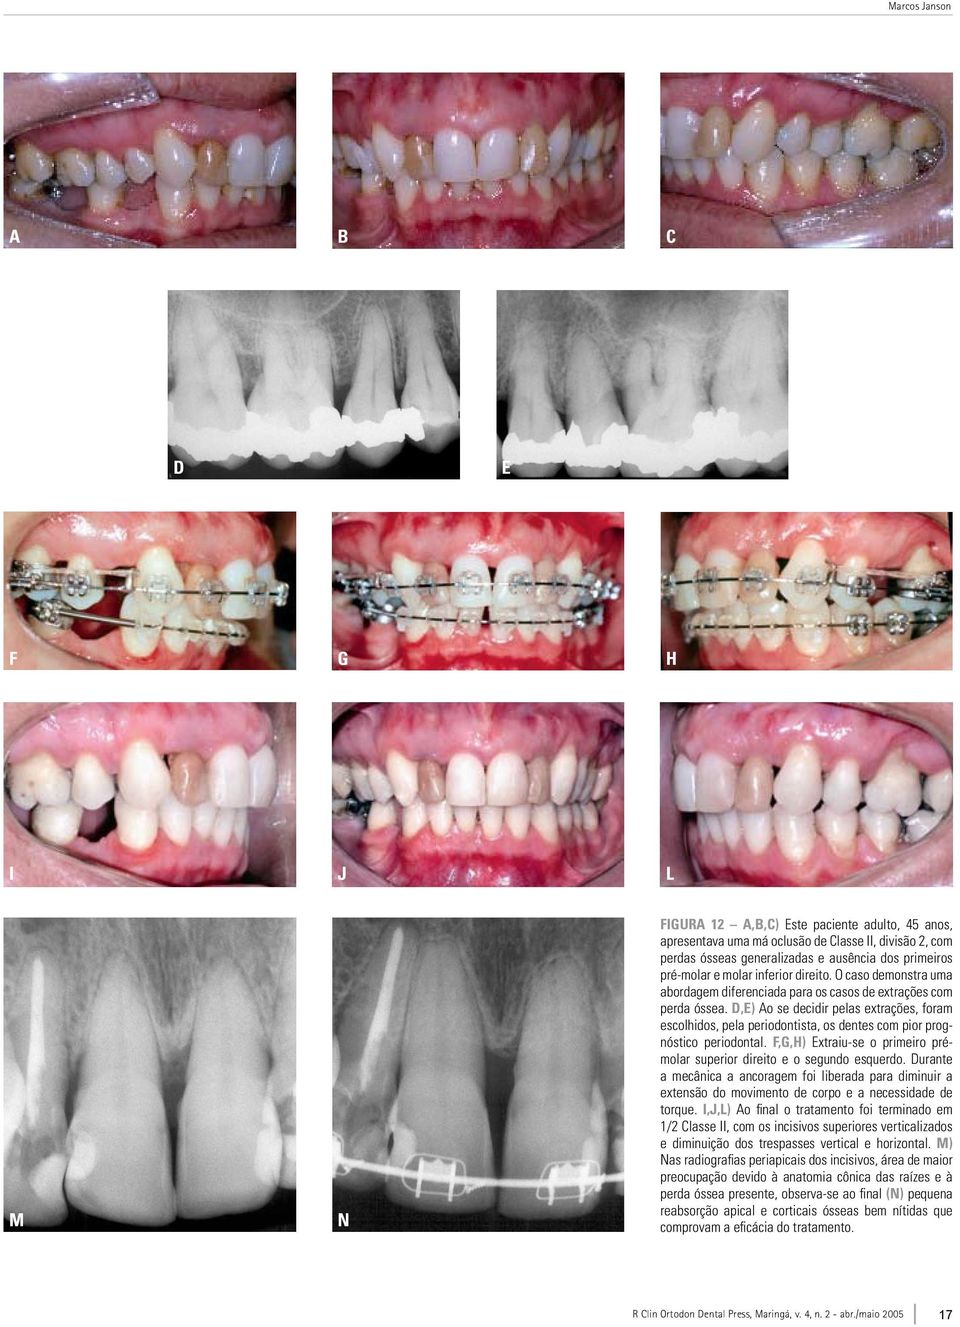 D,E) Ao se decidir pelas extrações, foram escolhidos, pela periodontista, os dentes com pior prognóstico periodontal. F,G,H) Extraiu-se o primeiro prémolar superior direito e o segundo esquerdo.